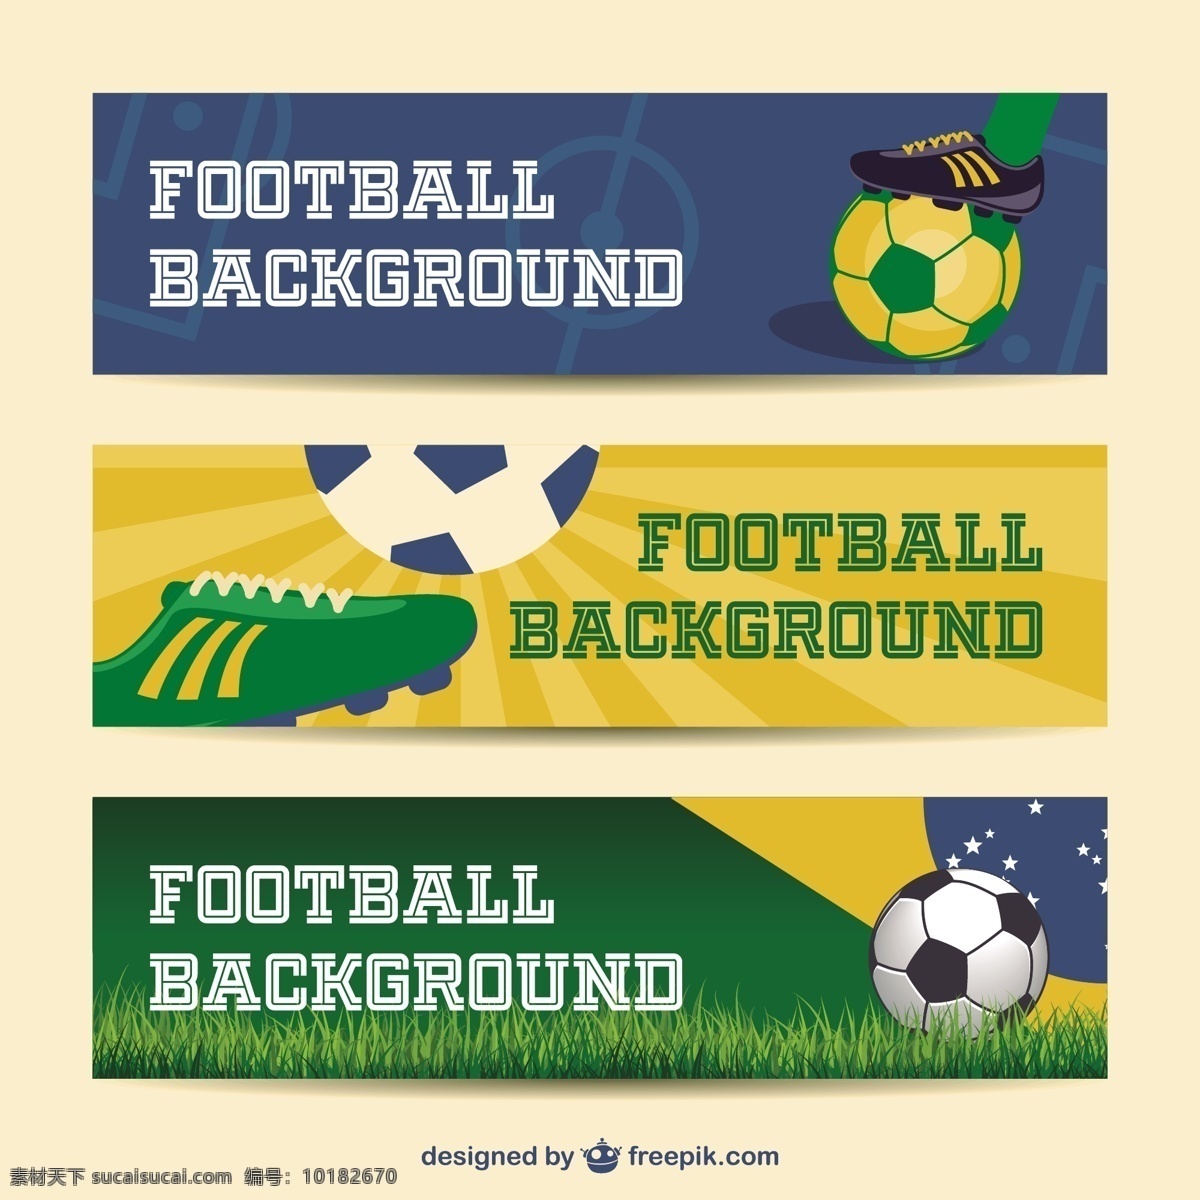 足球 世界杯 旗帜 背景 横幅 海报 体育 草地 绿色背景 运动 壁纸 图形 庆典 平面设计 杯子 活动 白色